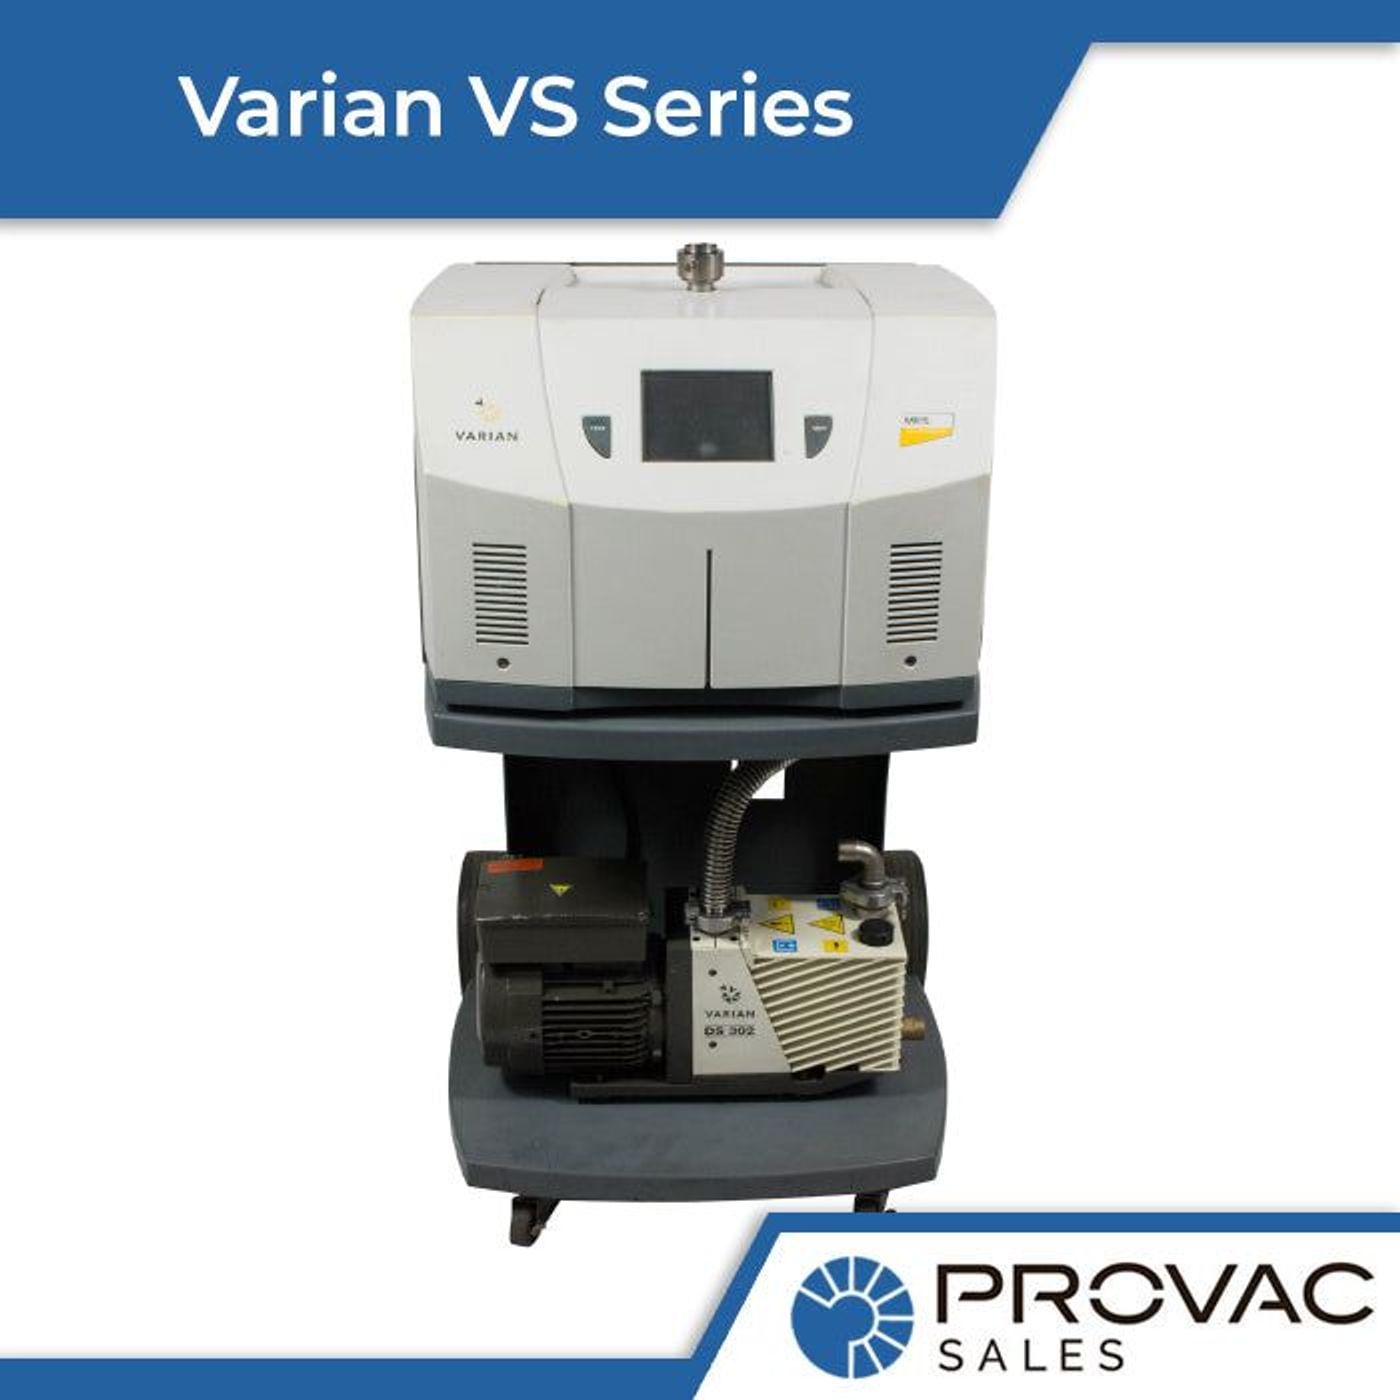 Varian VS Series of Helium Leak Detectors